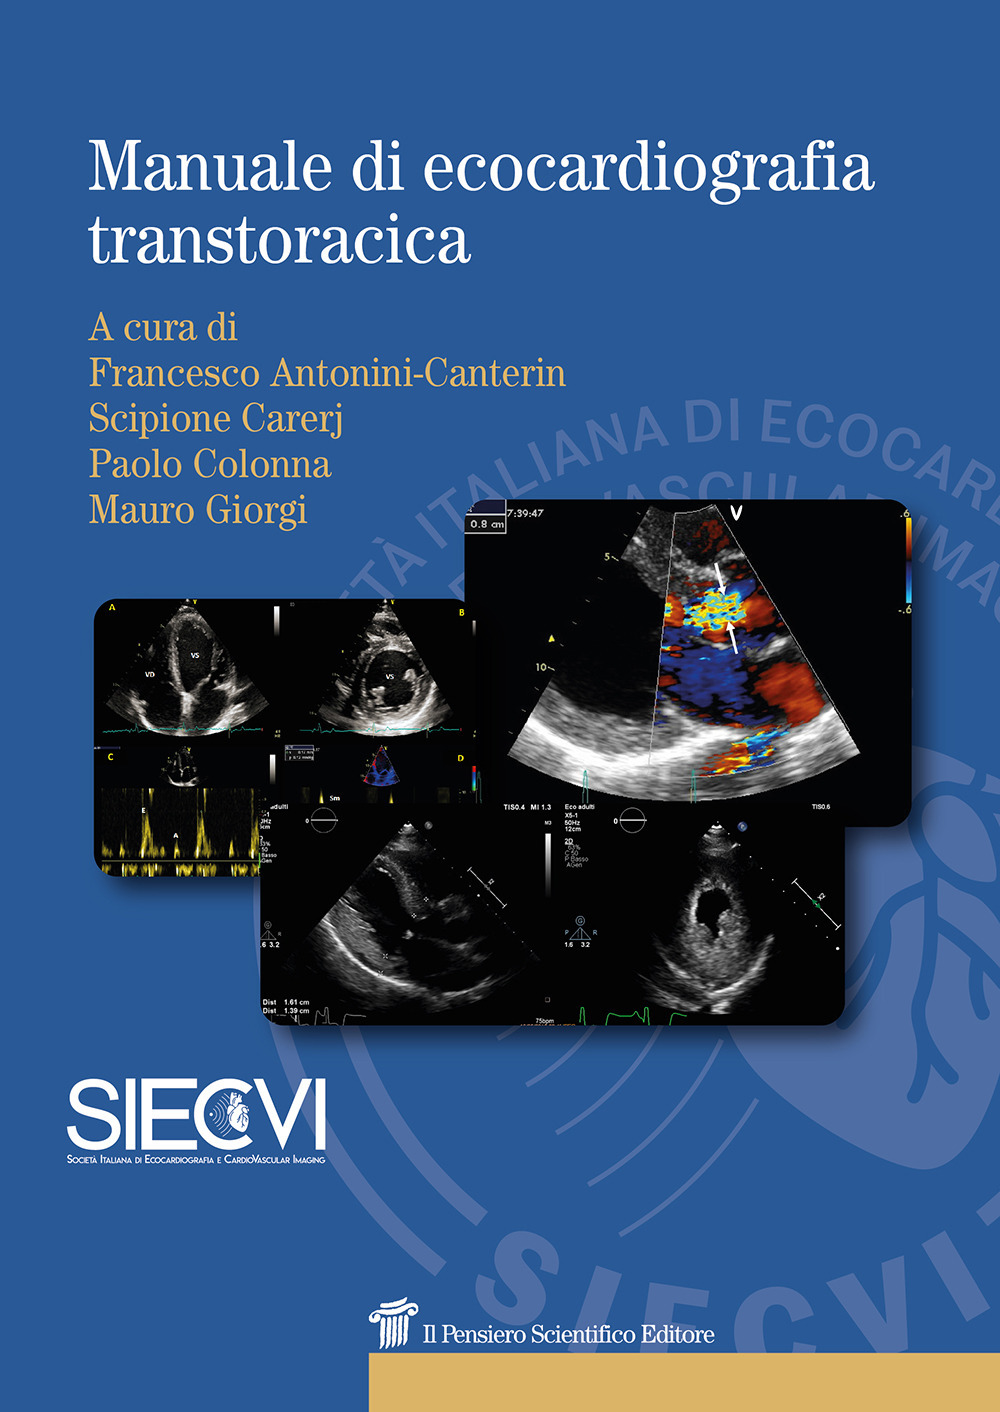 Libri Antonini Canterin Francesco - Manuale Di Ecocardiografia Transtoracica NUOVO SIGILLATO, EDIZIONE DEL 02/10/2019 SUBITO DISPONIBILE